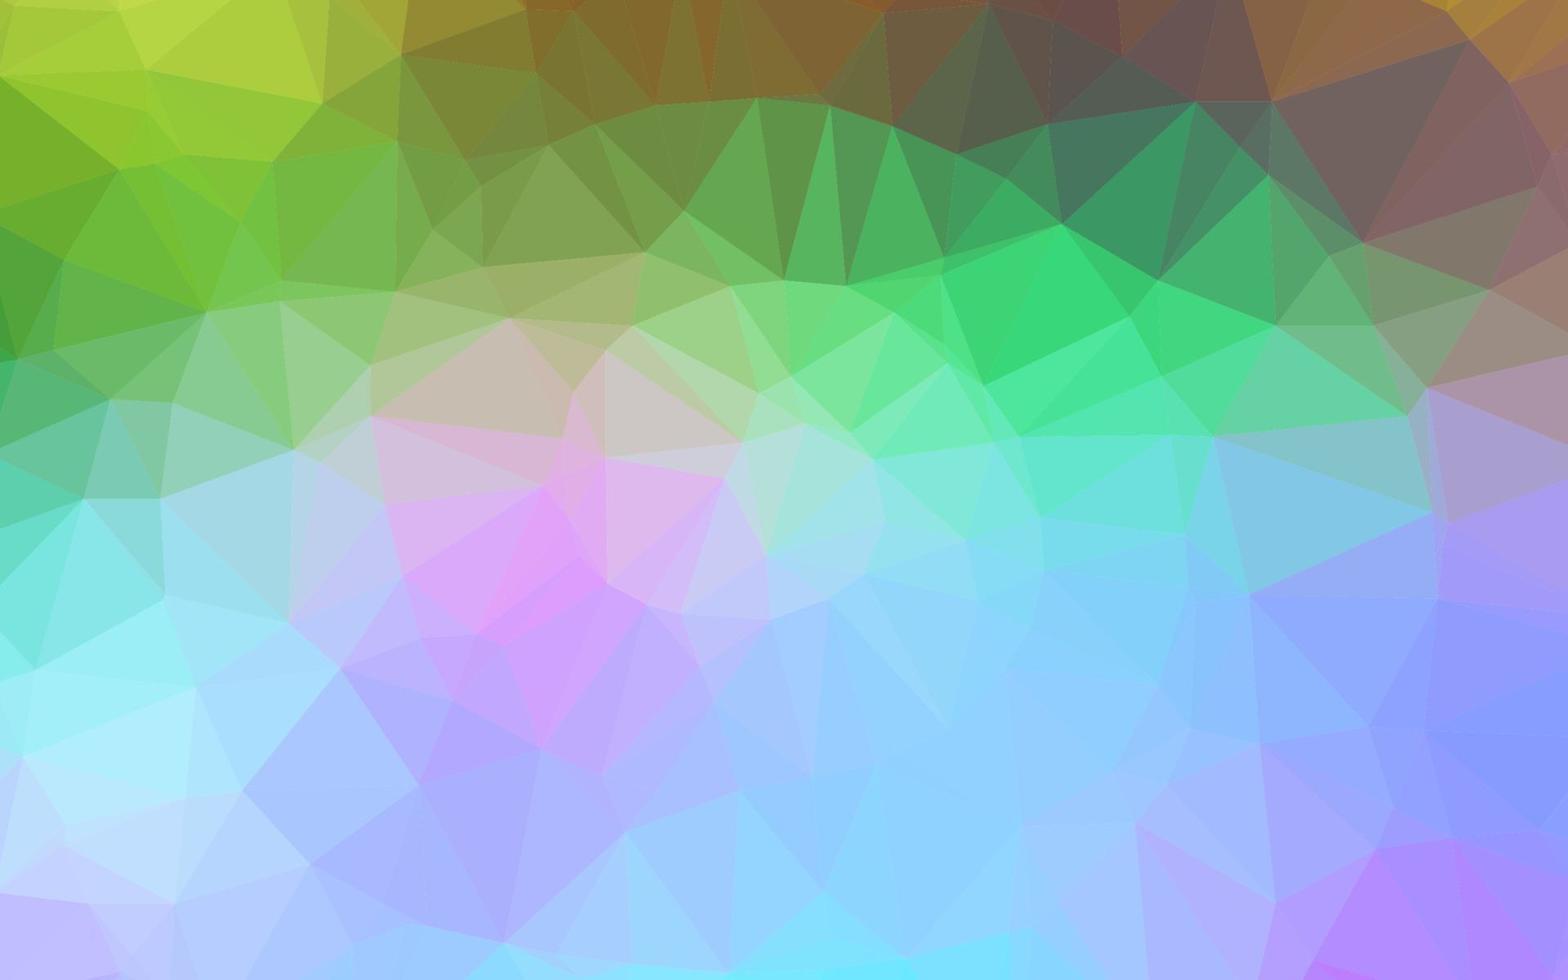 luce multicolore, struttura poligonale astratta di vettore arcobaleno.